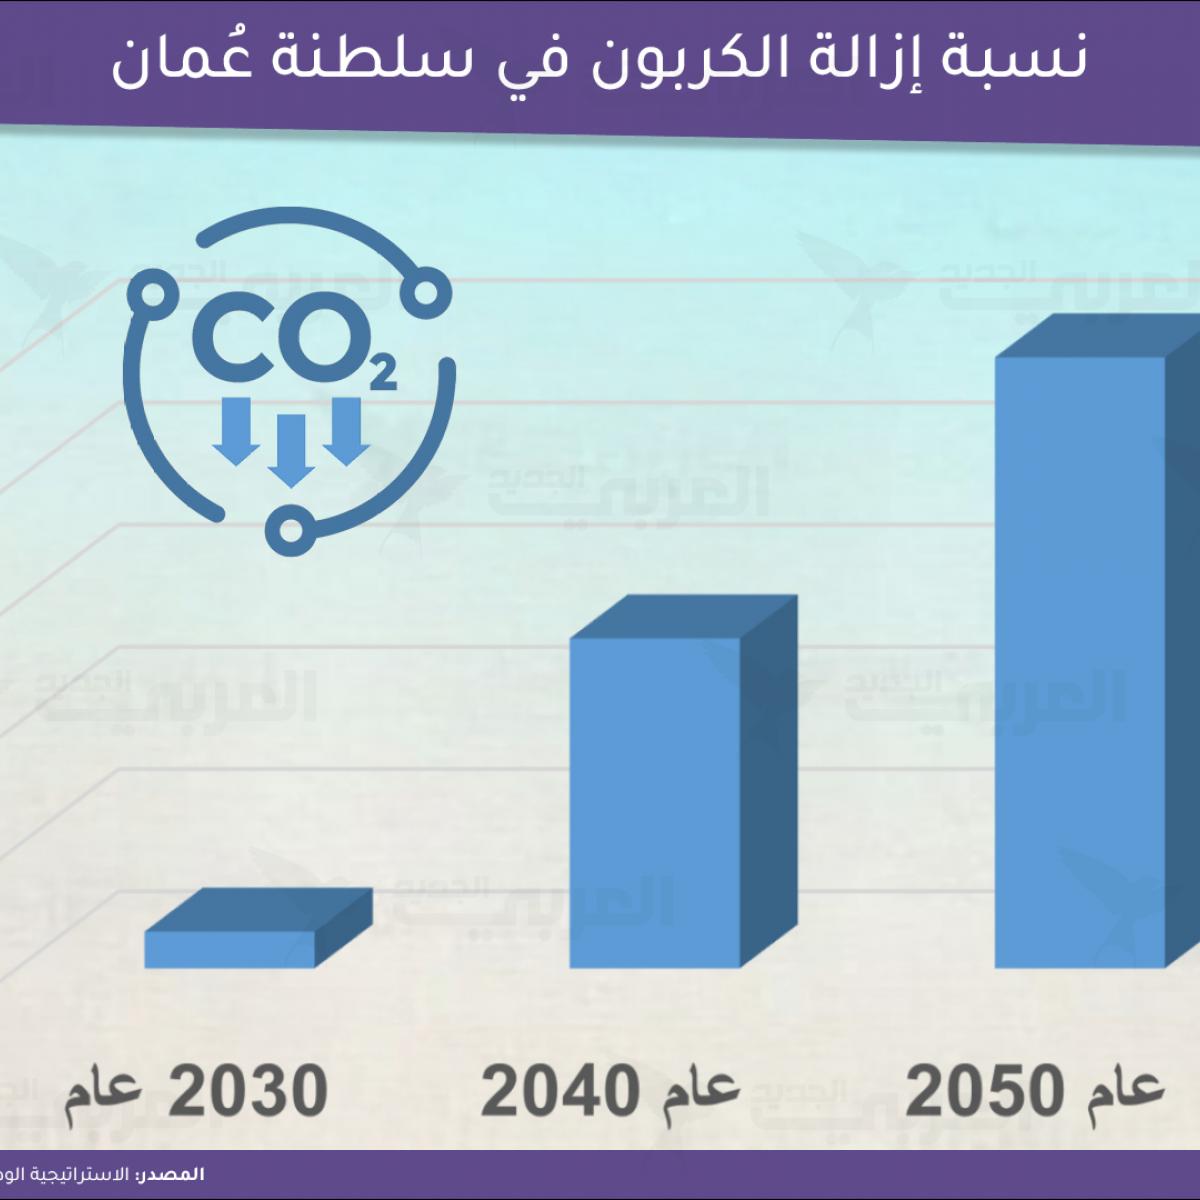 استراتيجية الحياد الكربوني في عُمان (العربي الجديد)